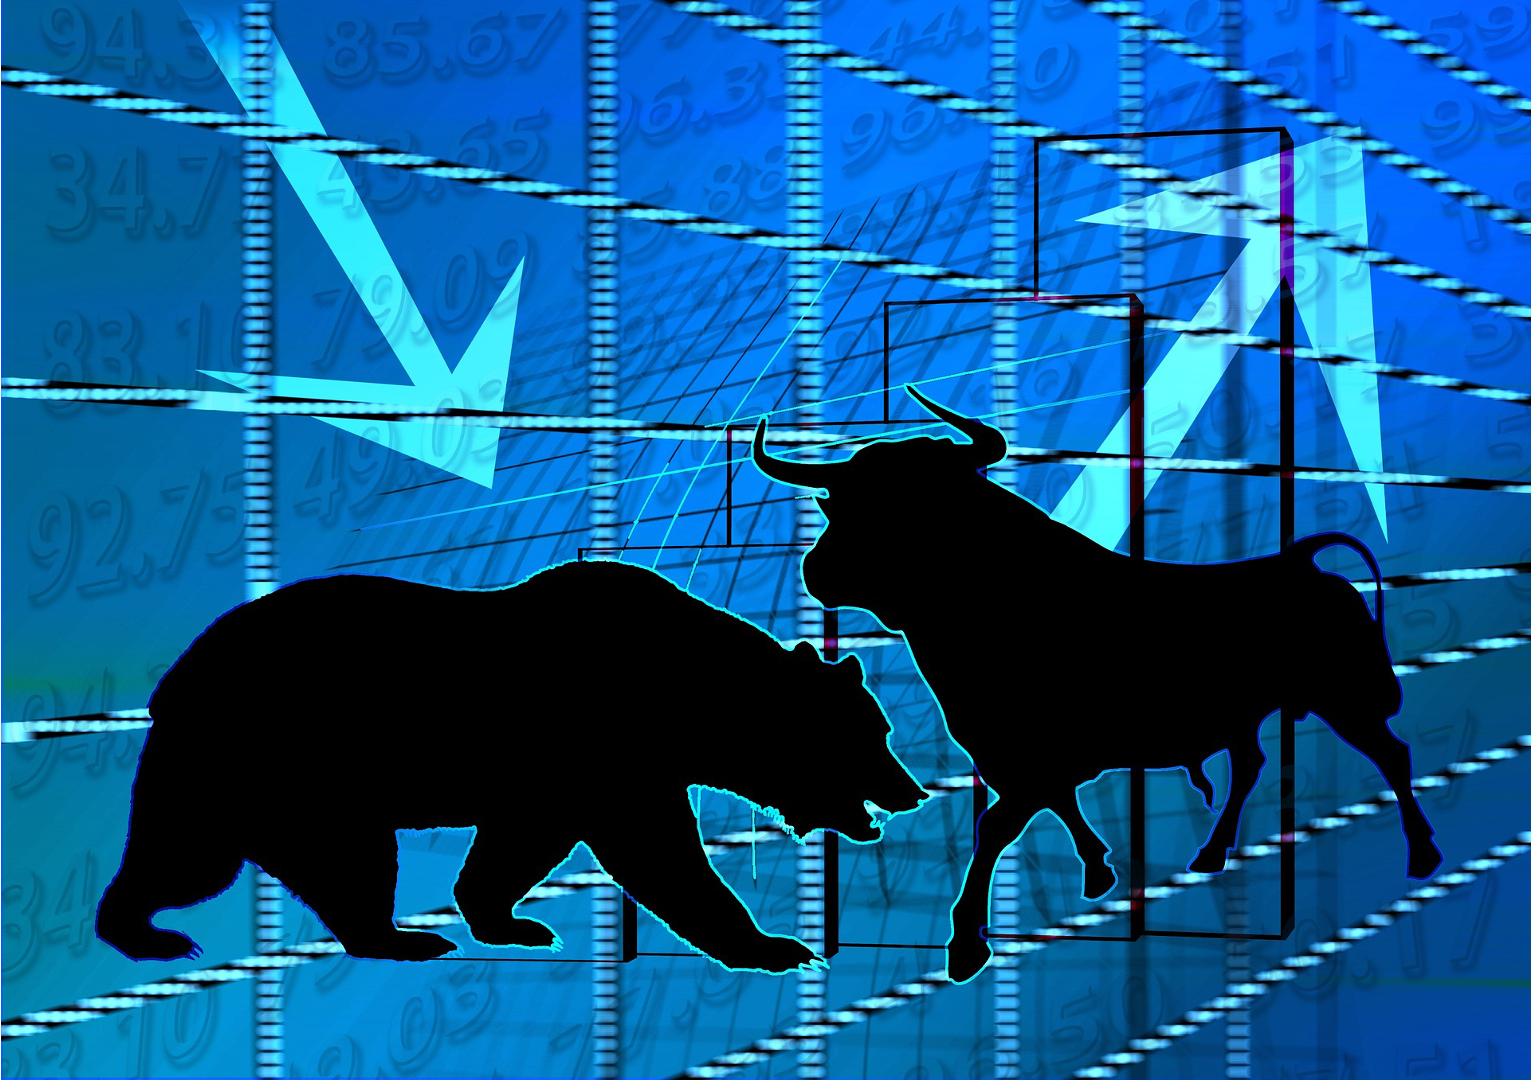 Aktienmarkt Darstellung in Form von Bull&Bear